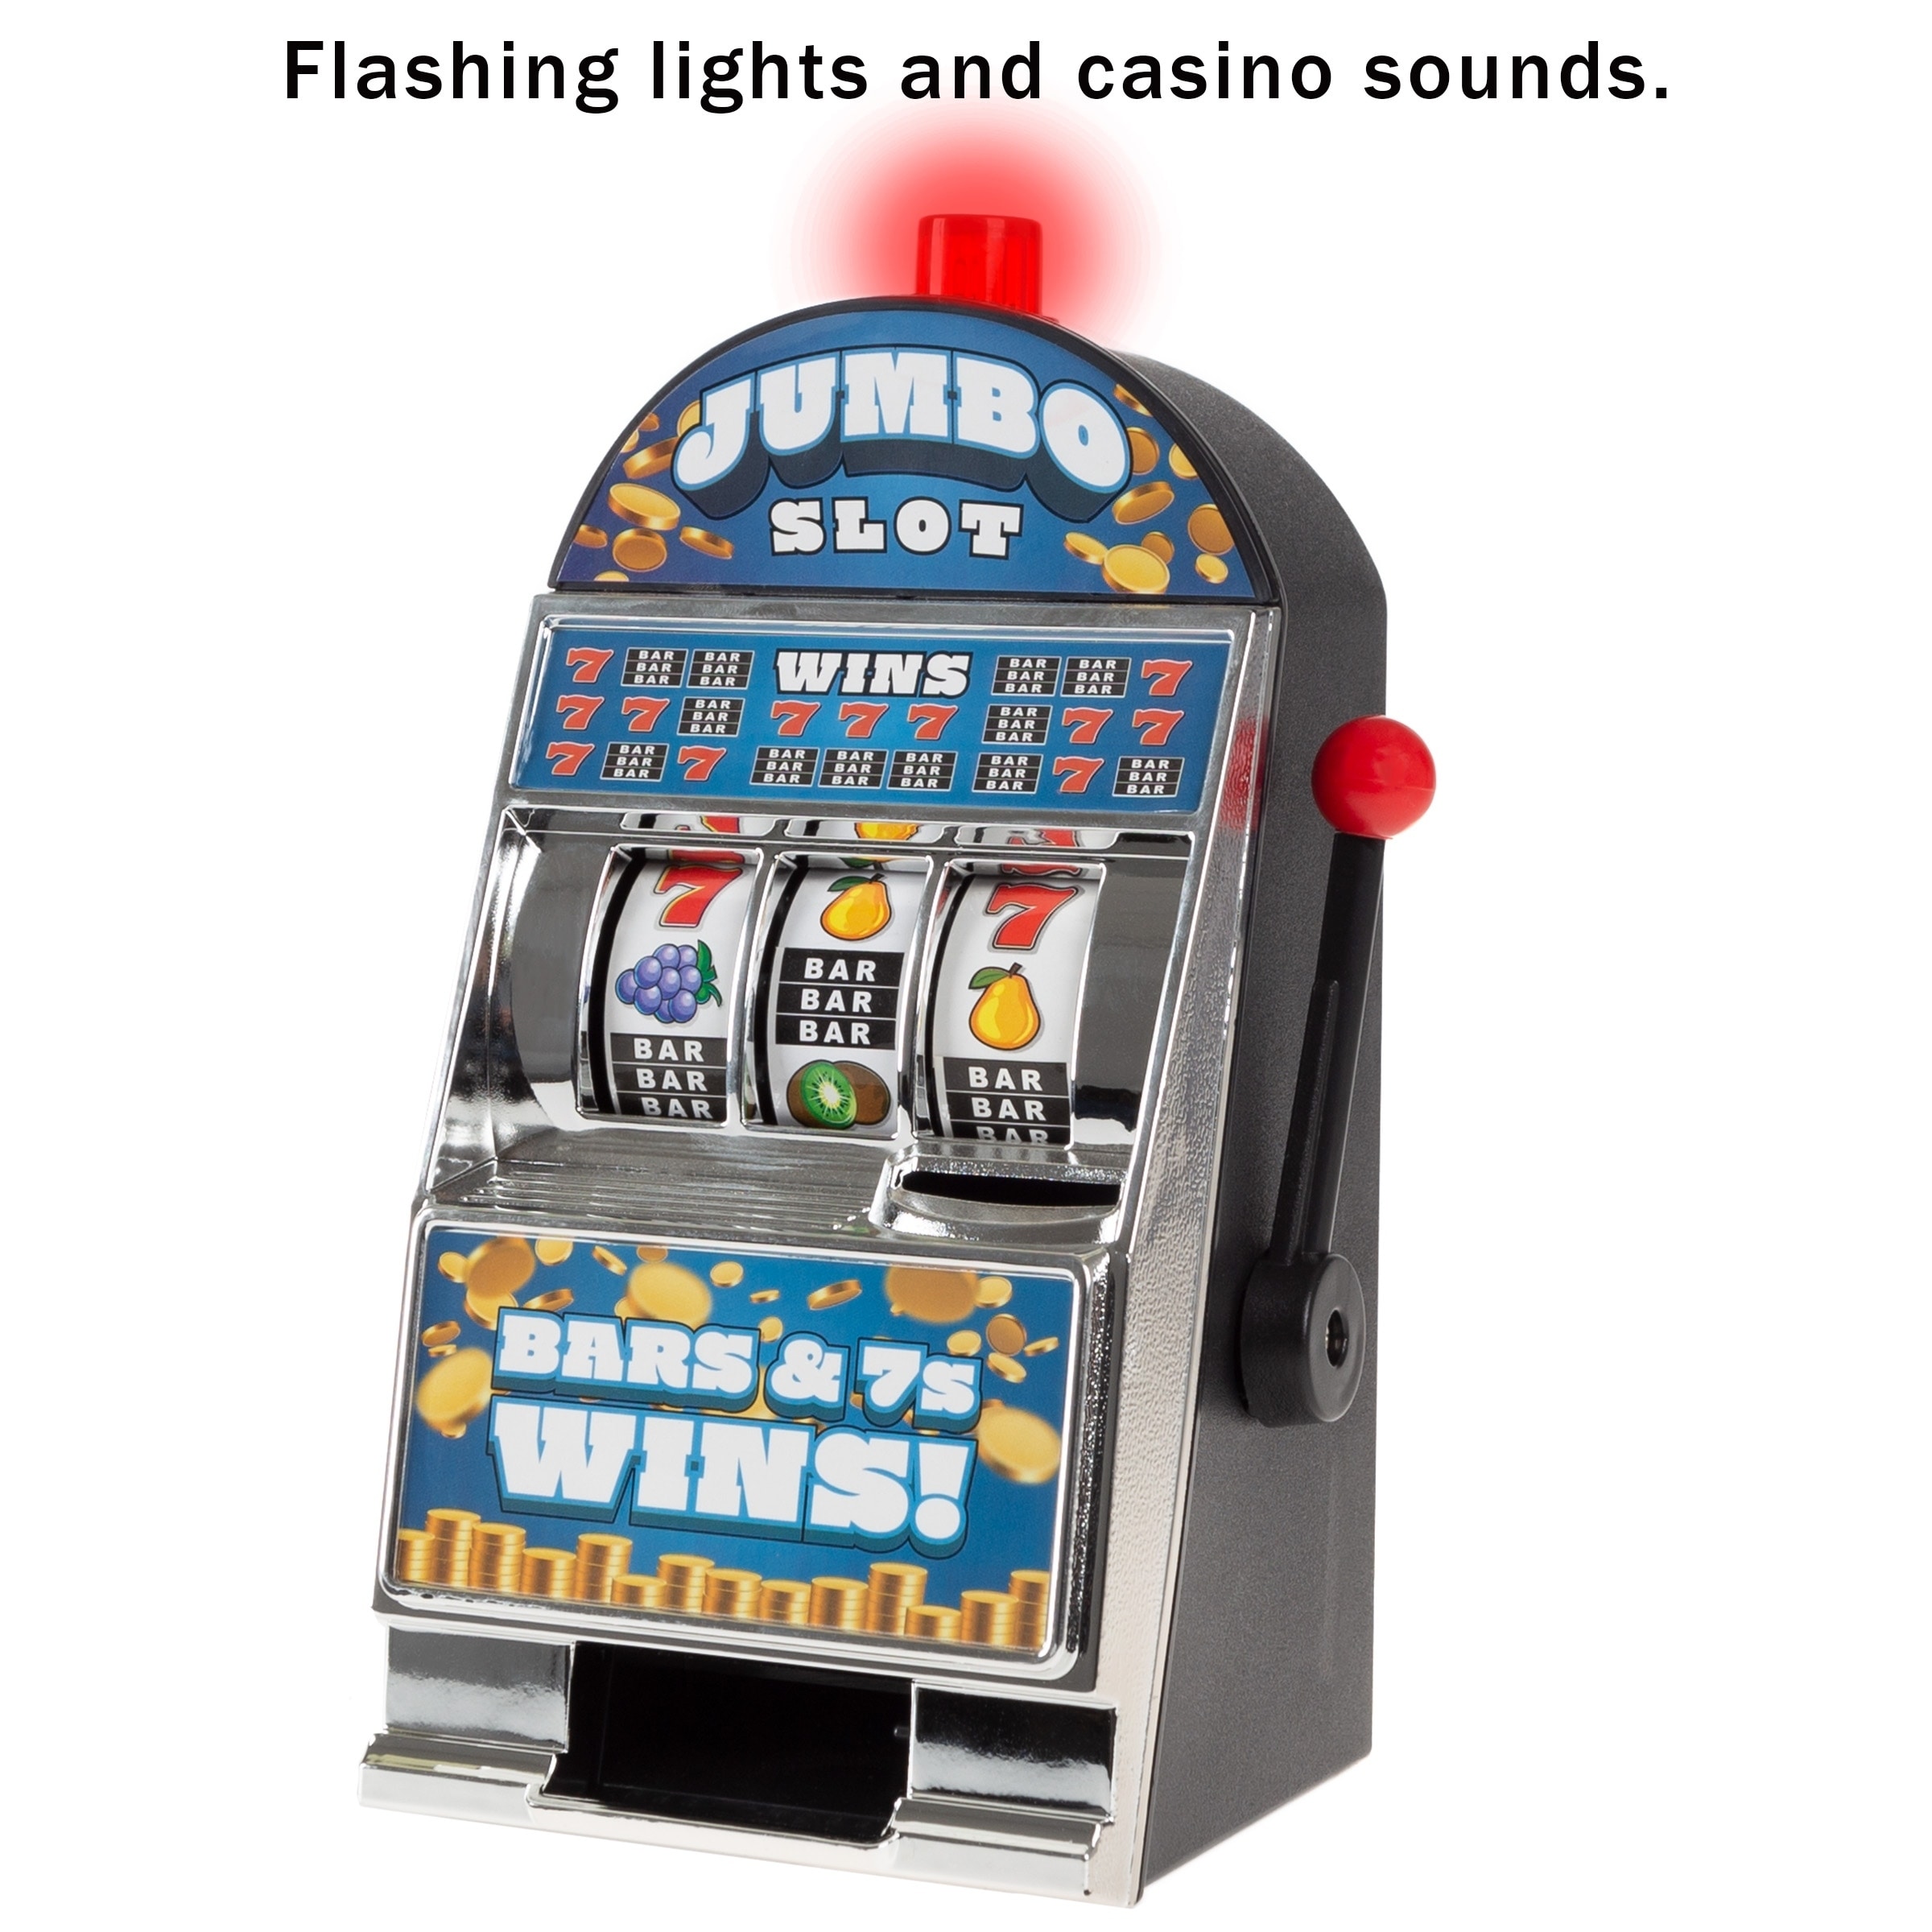 Casino slot machine jackpot sound effect